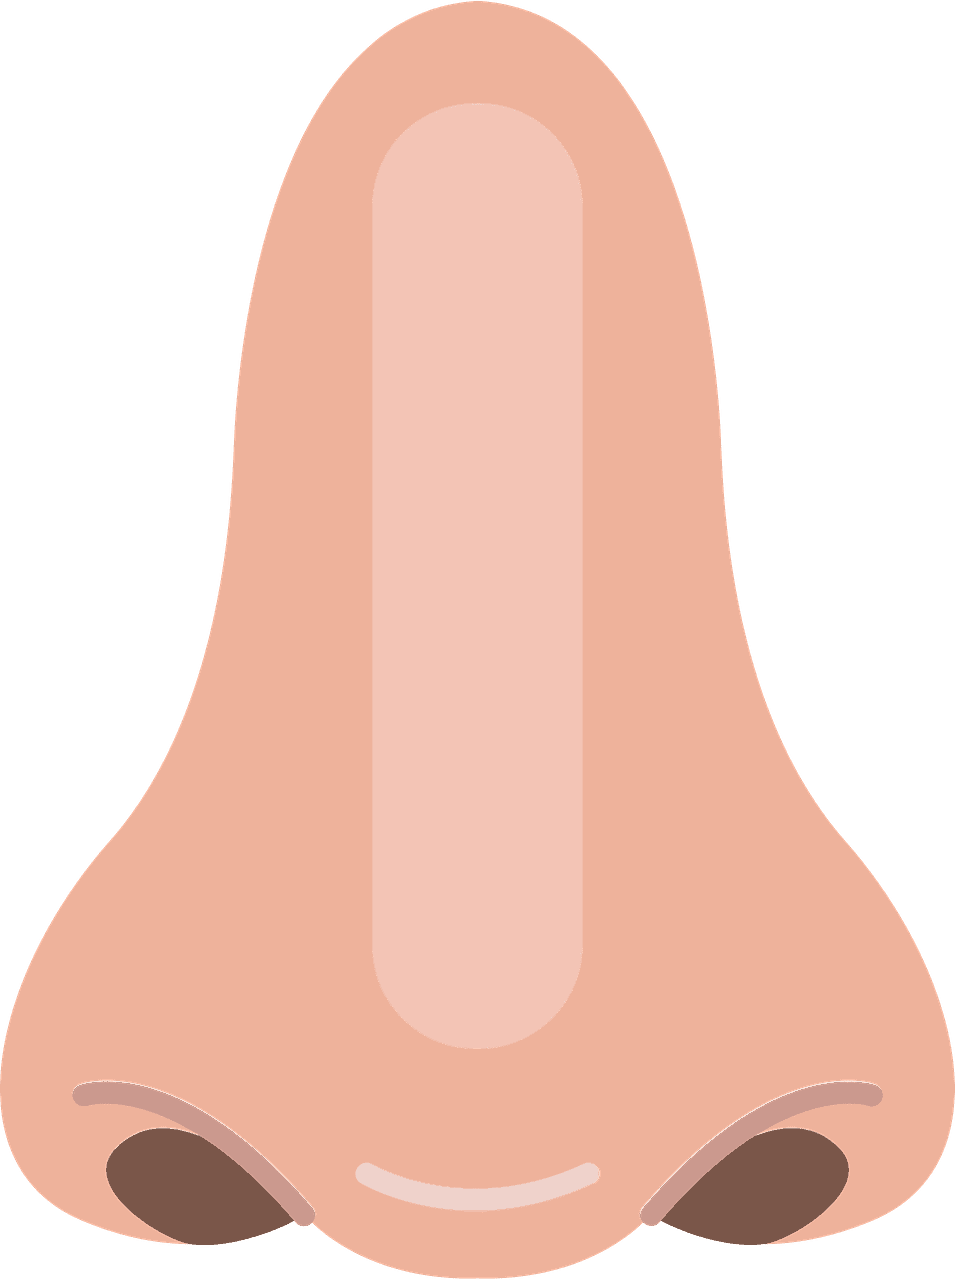 Nose clipart transparent images